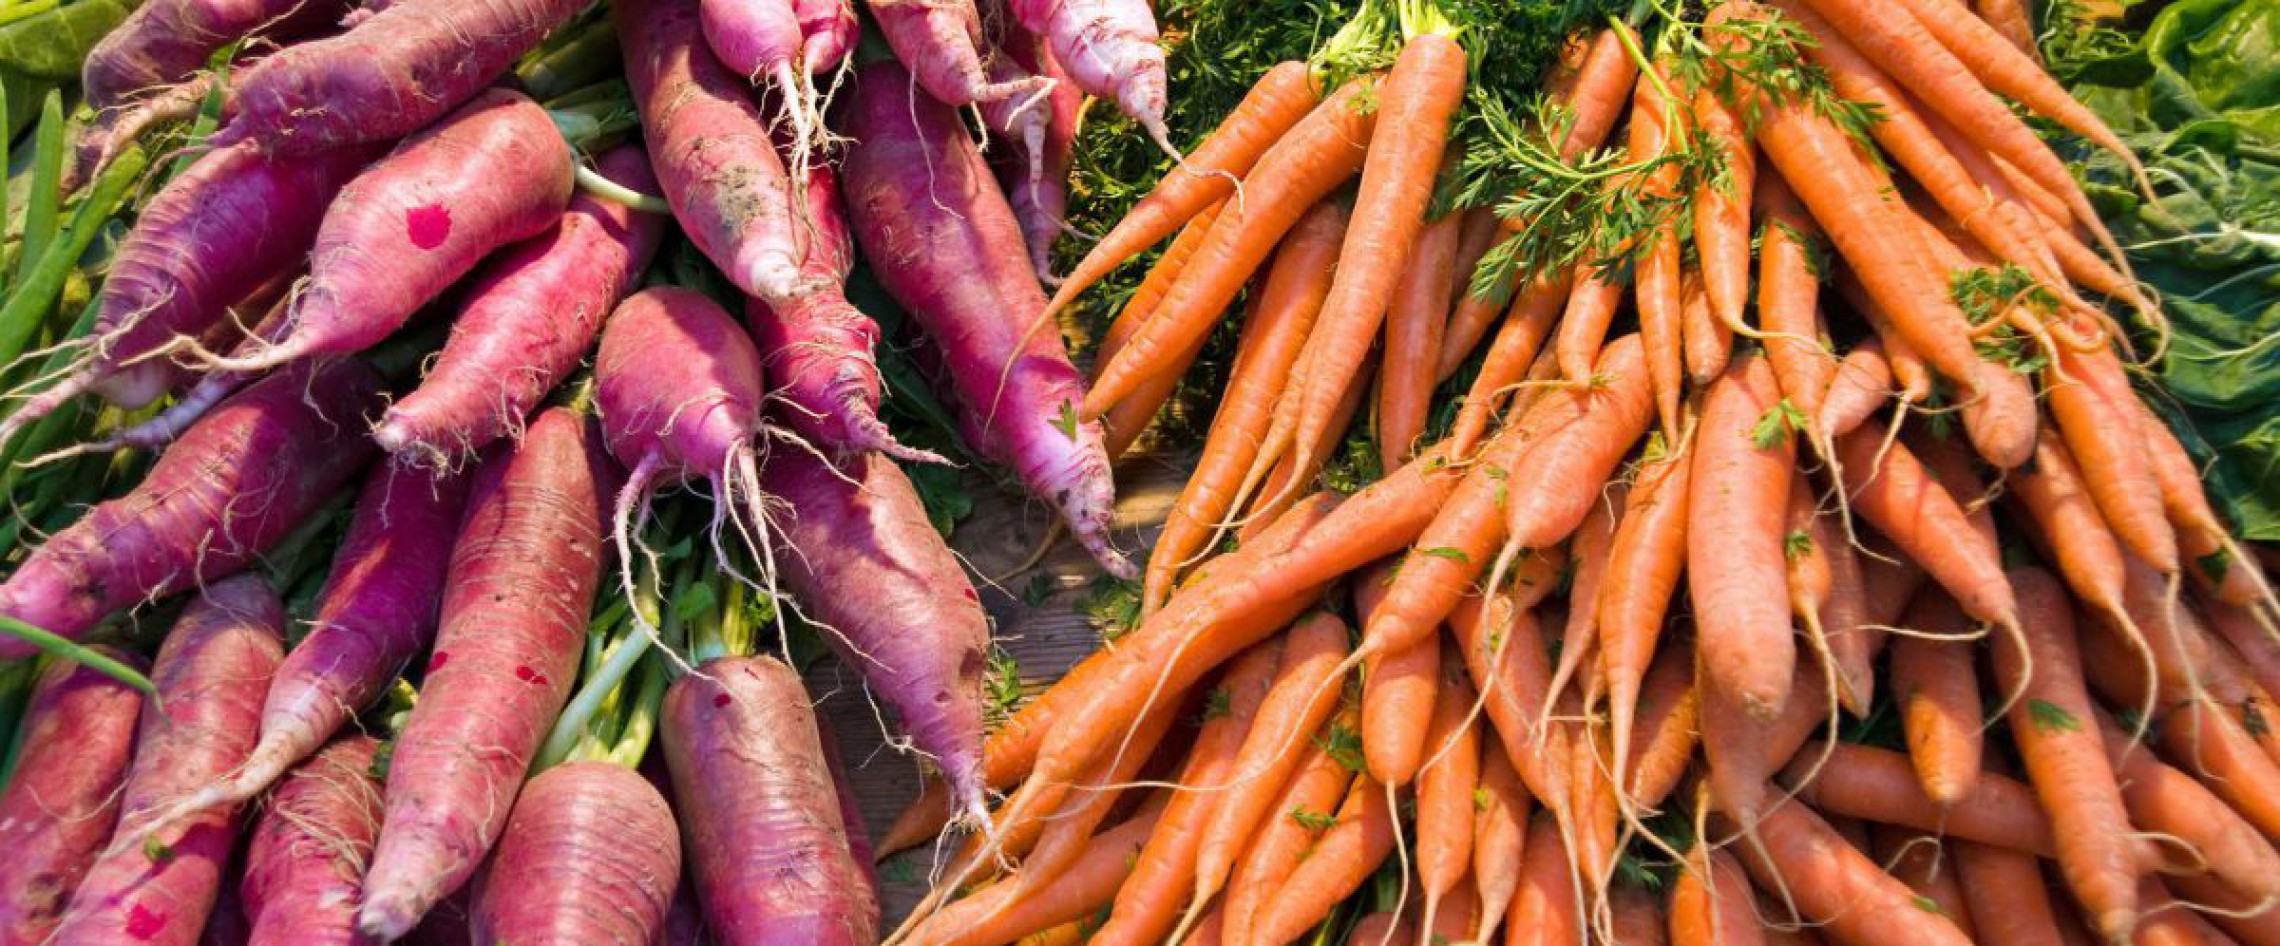 Rettich und Karotten zu Haufen zusammengelegt 